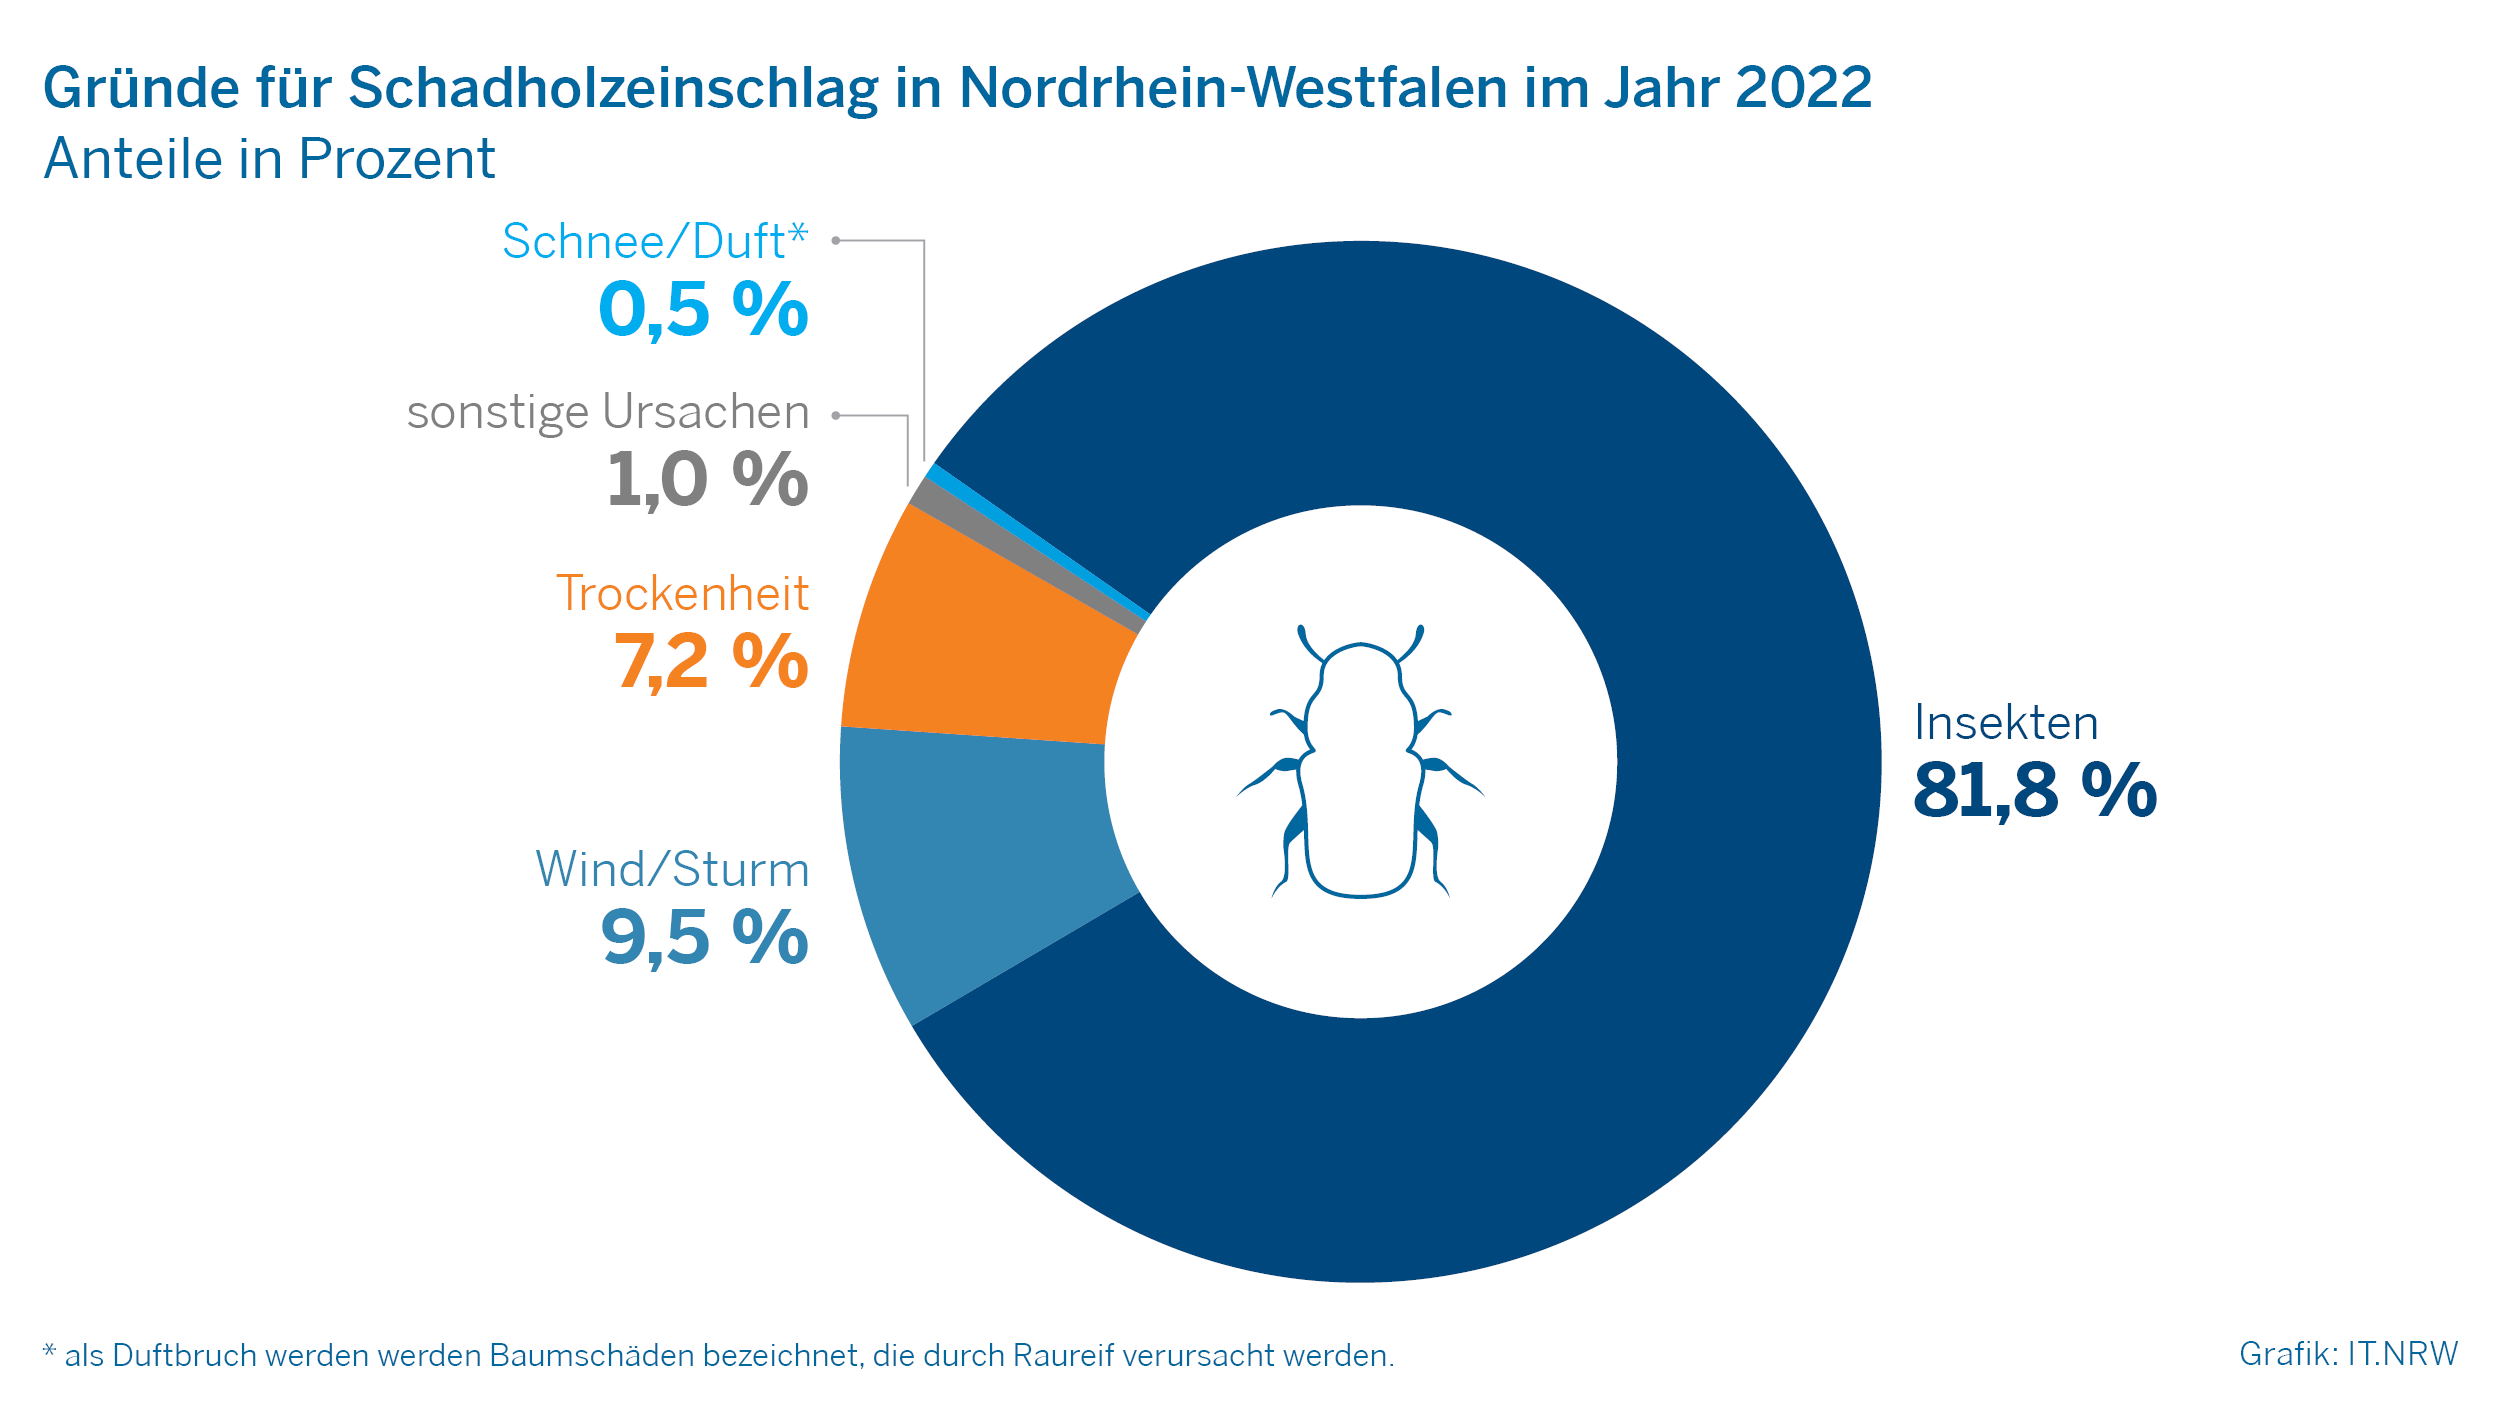 Gründe für Schadholzeinschlag in Nordrhein-Westfalen im Jahr 2022